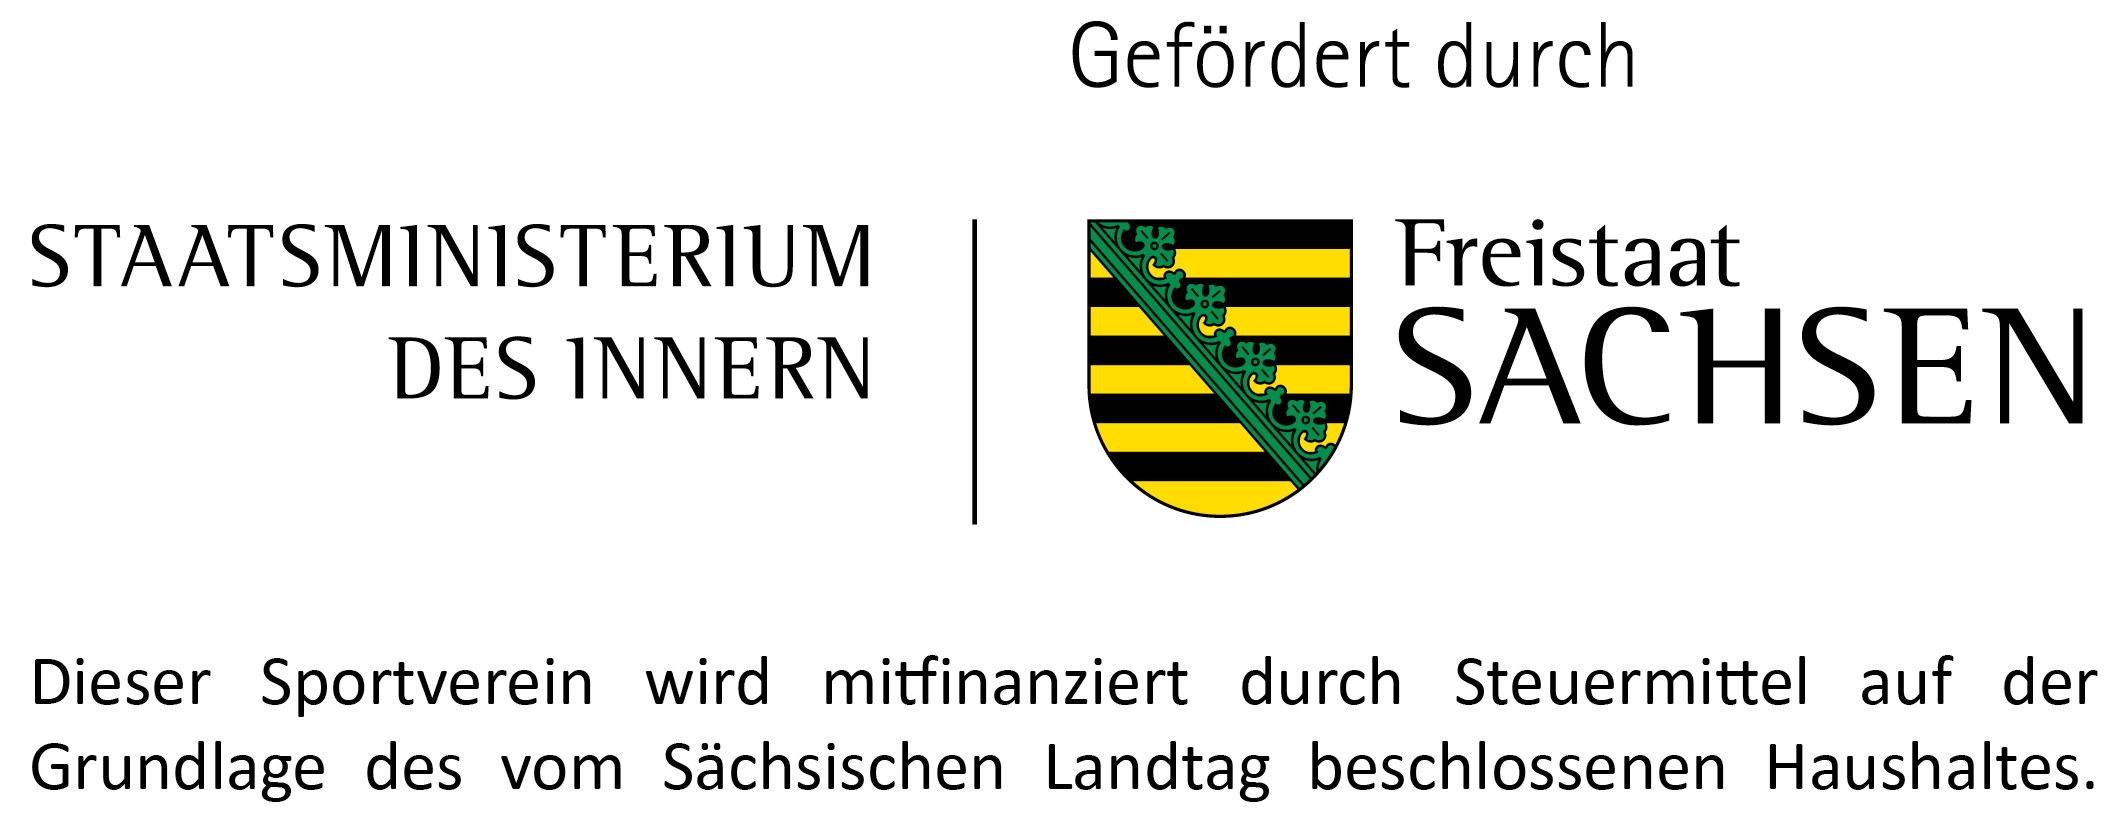 Dieser Sportverein wird mitfinanziert durch Steuermittel auf der Grundlage des vom Sächsischen Landtag beschlossenen Haushaltes.